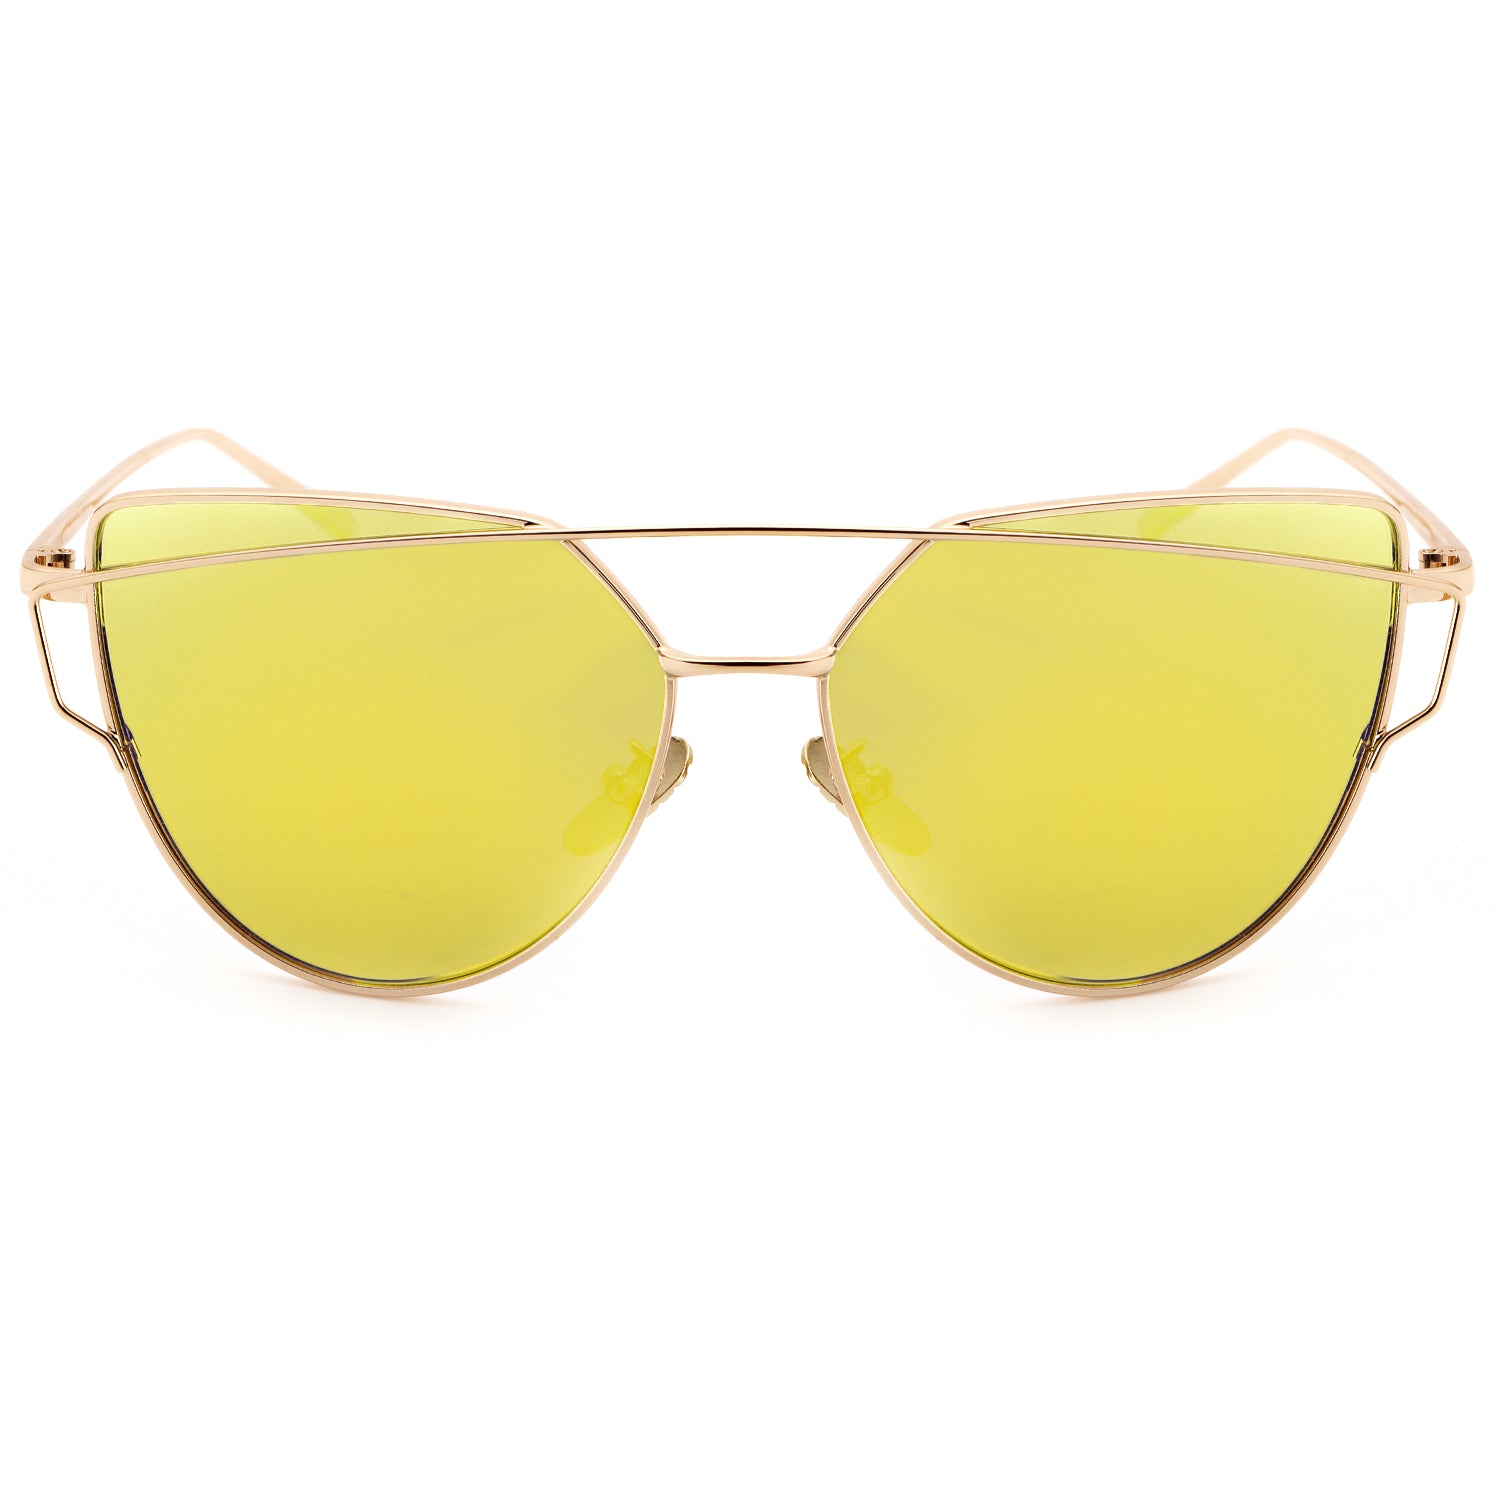 LVIOE Cat Eye Sunglasses for Women Mirrored Lenses - LVIOE